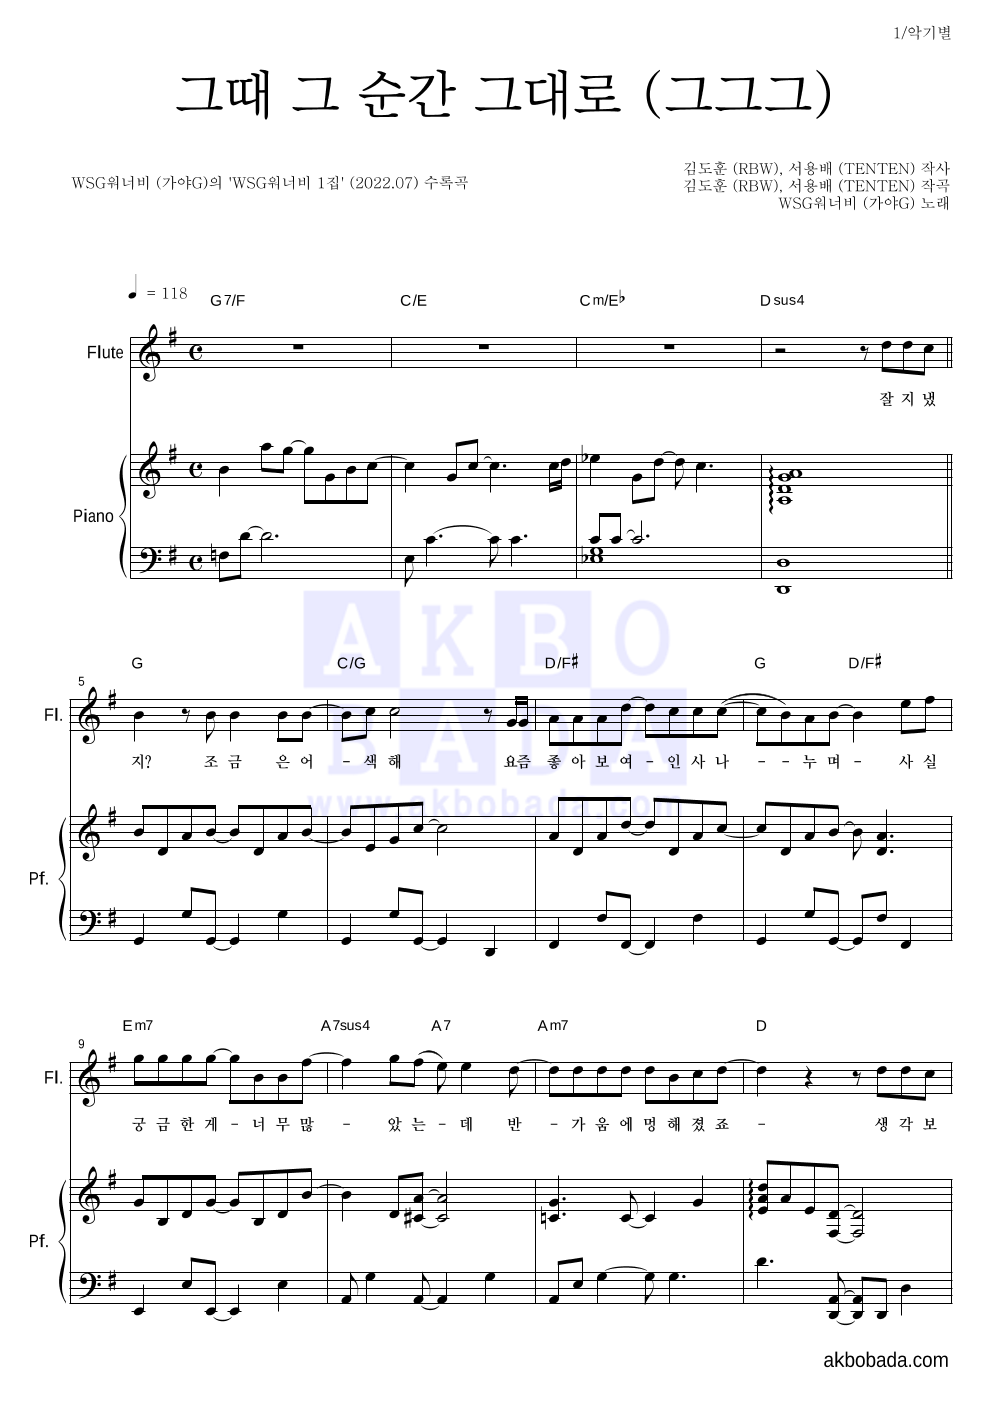 WSG워너비(가야G) - 그때 그 순간 그대로 (그그그) 플룻&피아노 악보 